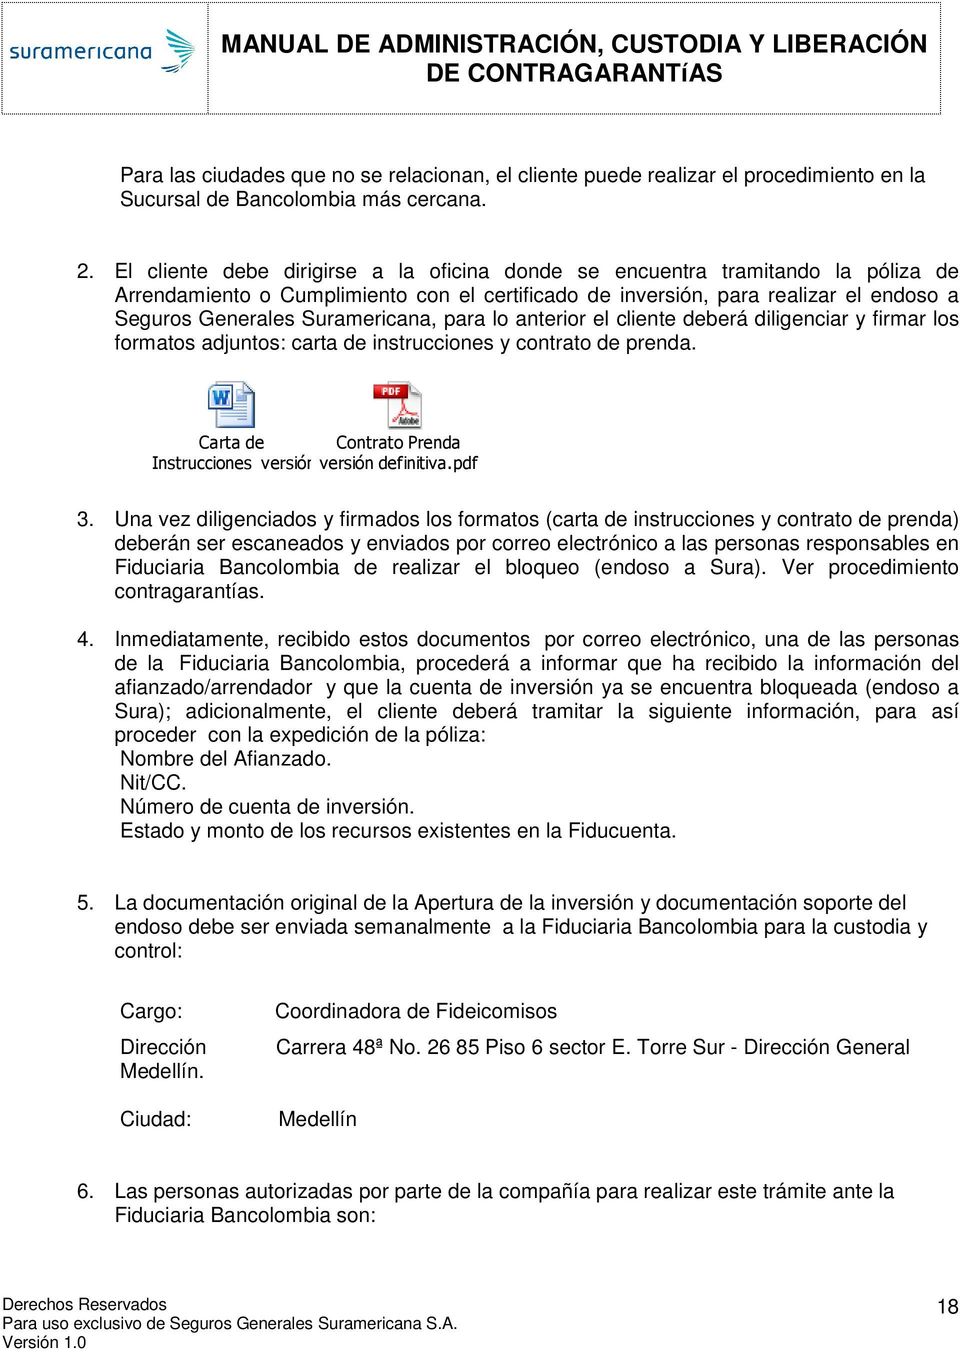 MANUAL DE ADMINISTRACIÓN Y CUSTODIA DE CONTRAGARANTIAS - PDF